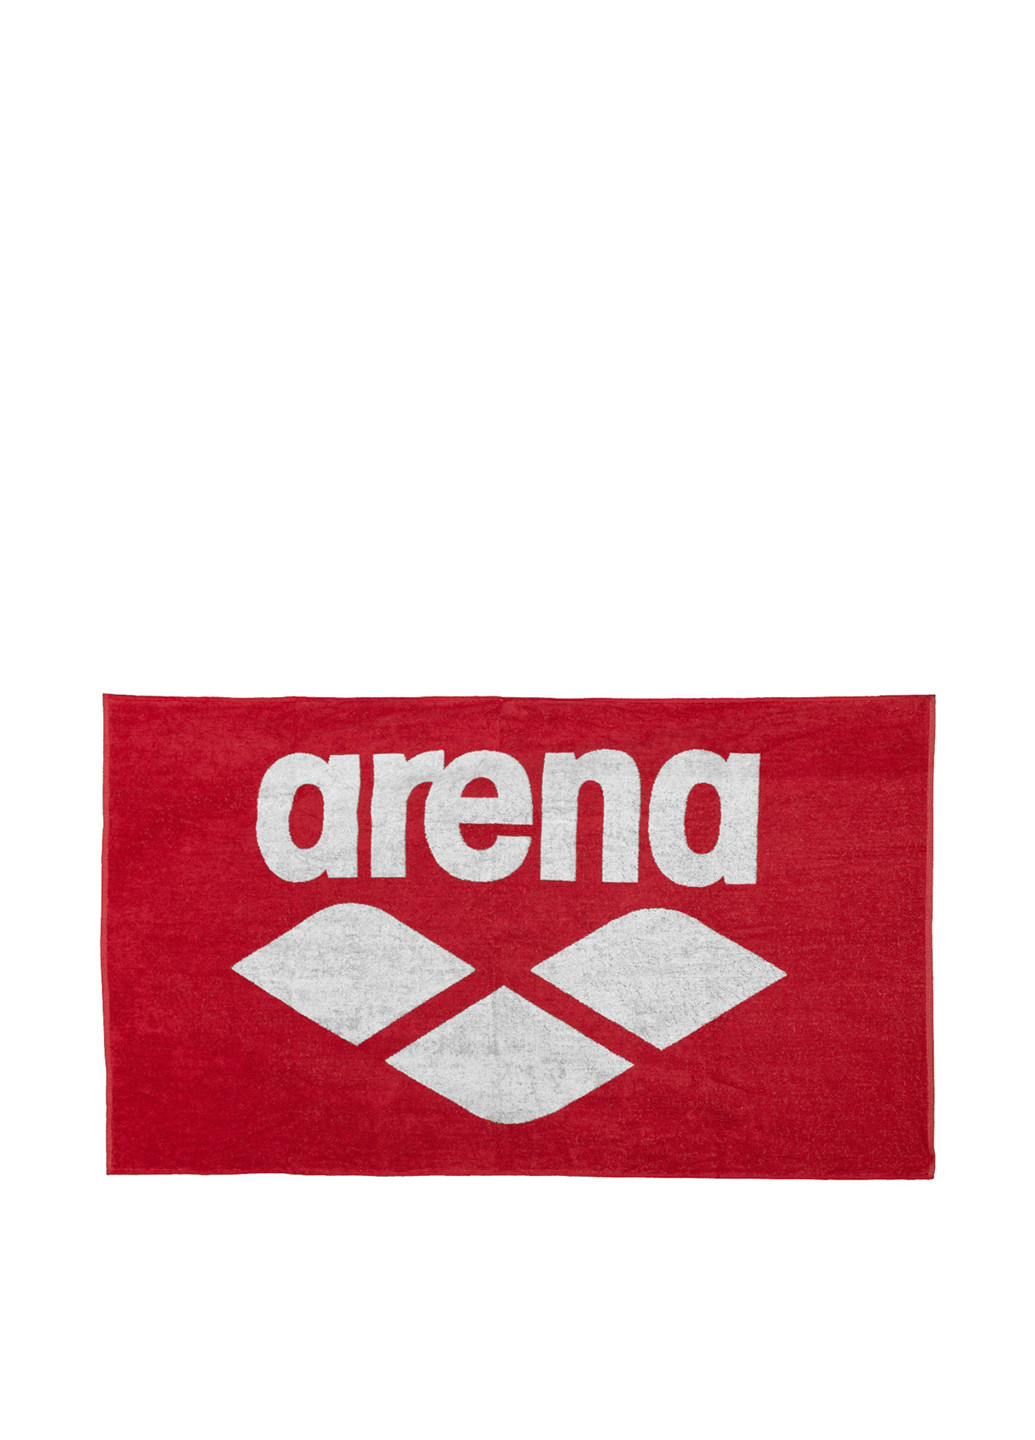 Полотенце, 150х90 см Arena надпись красное